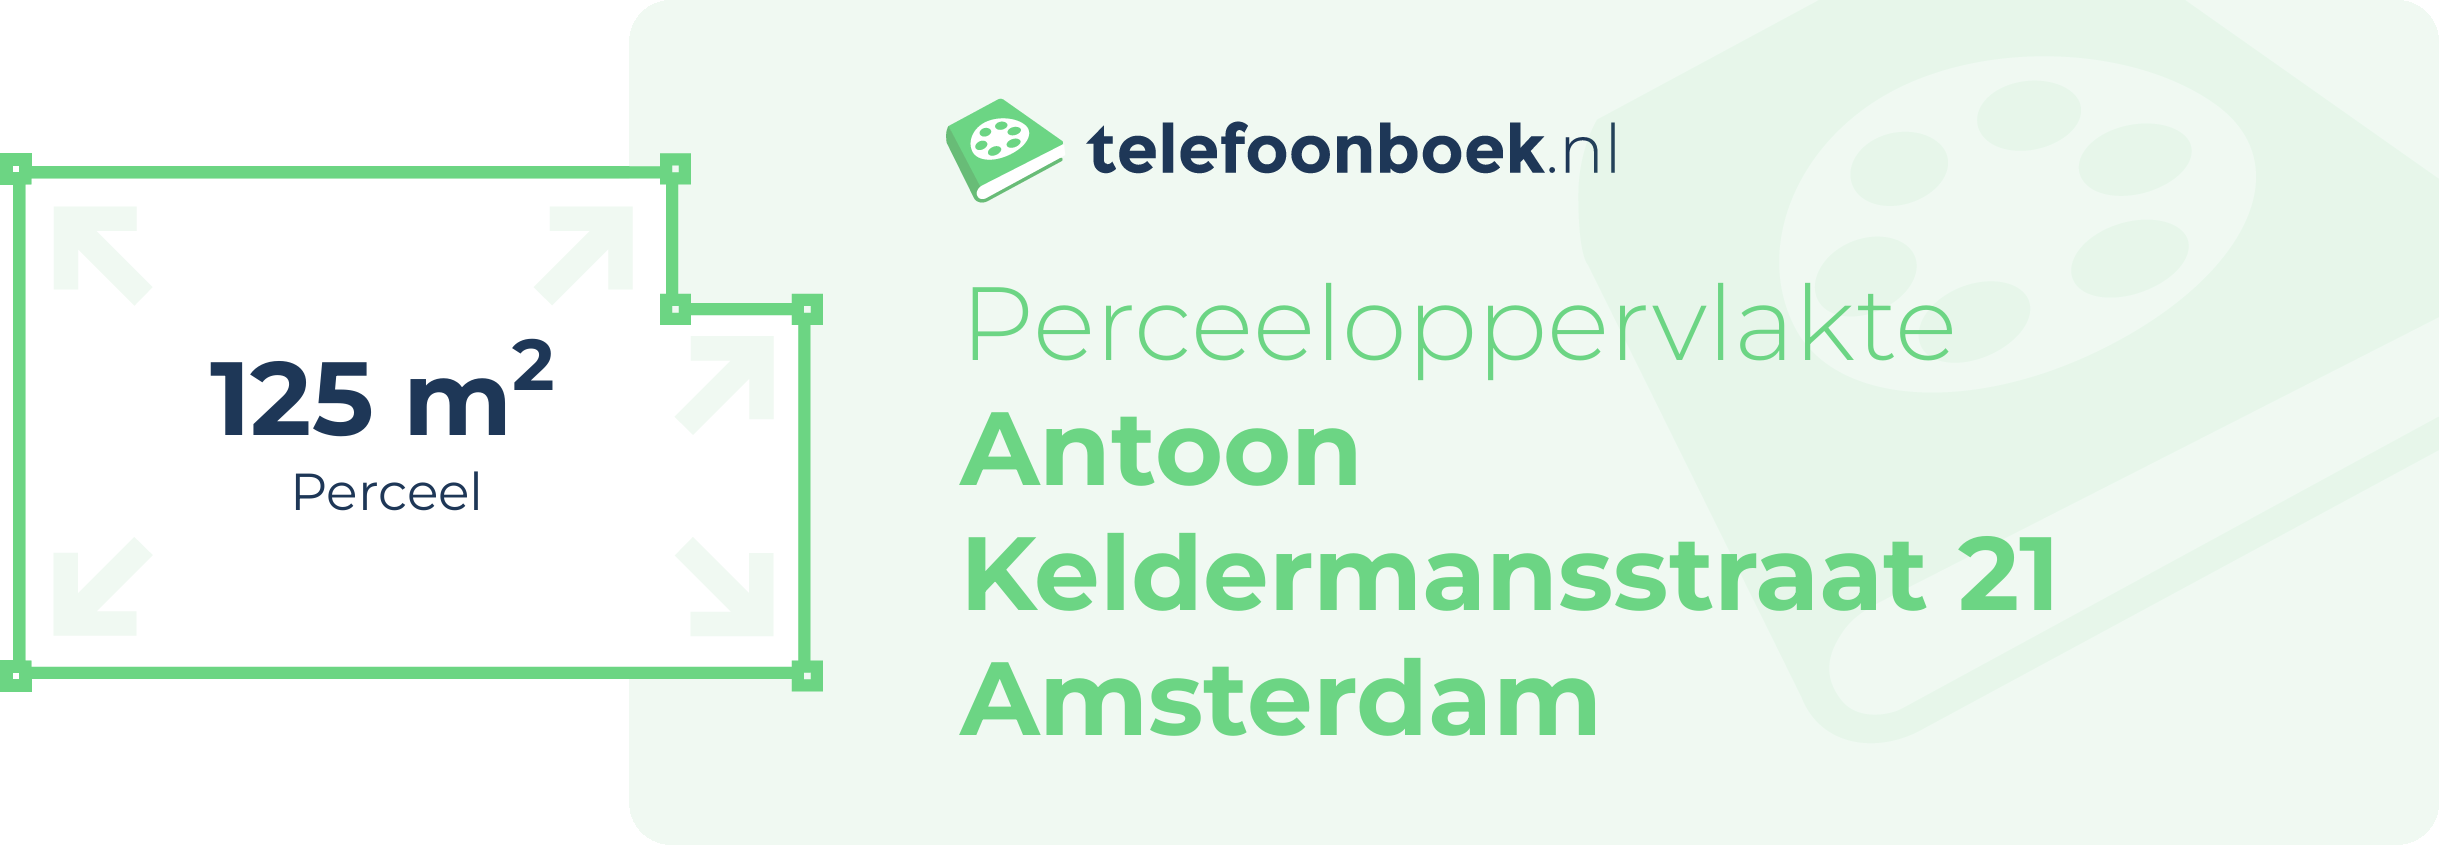 Perceeloppervlakte Antoon Keldermansstraat 21 Amsterdam